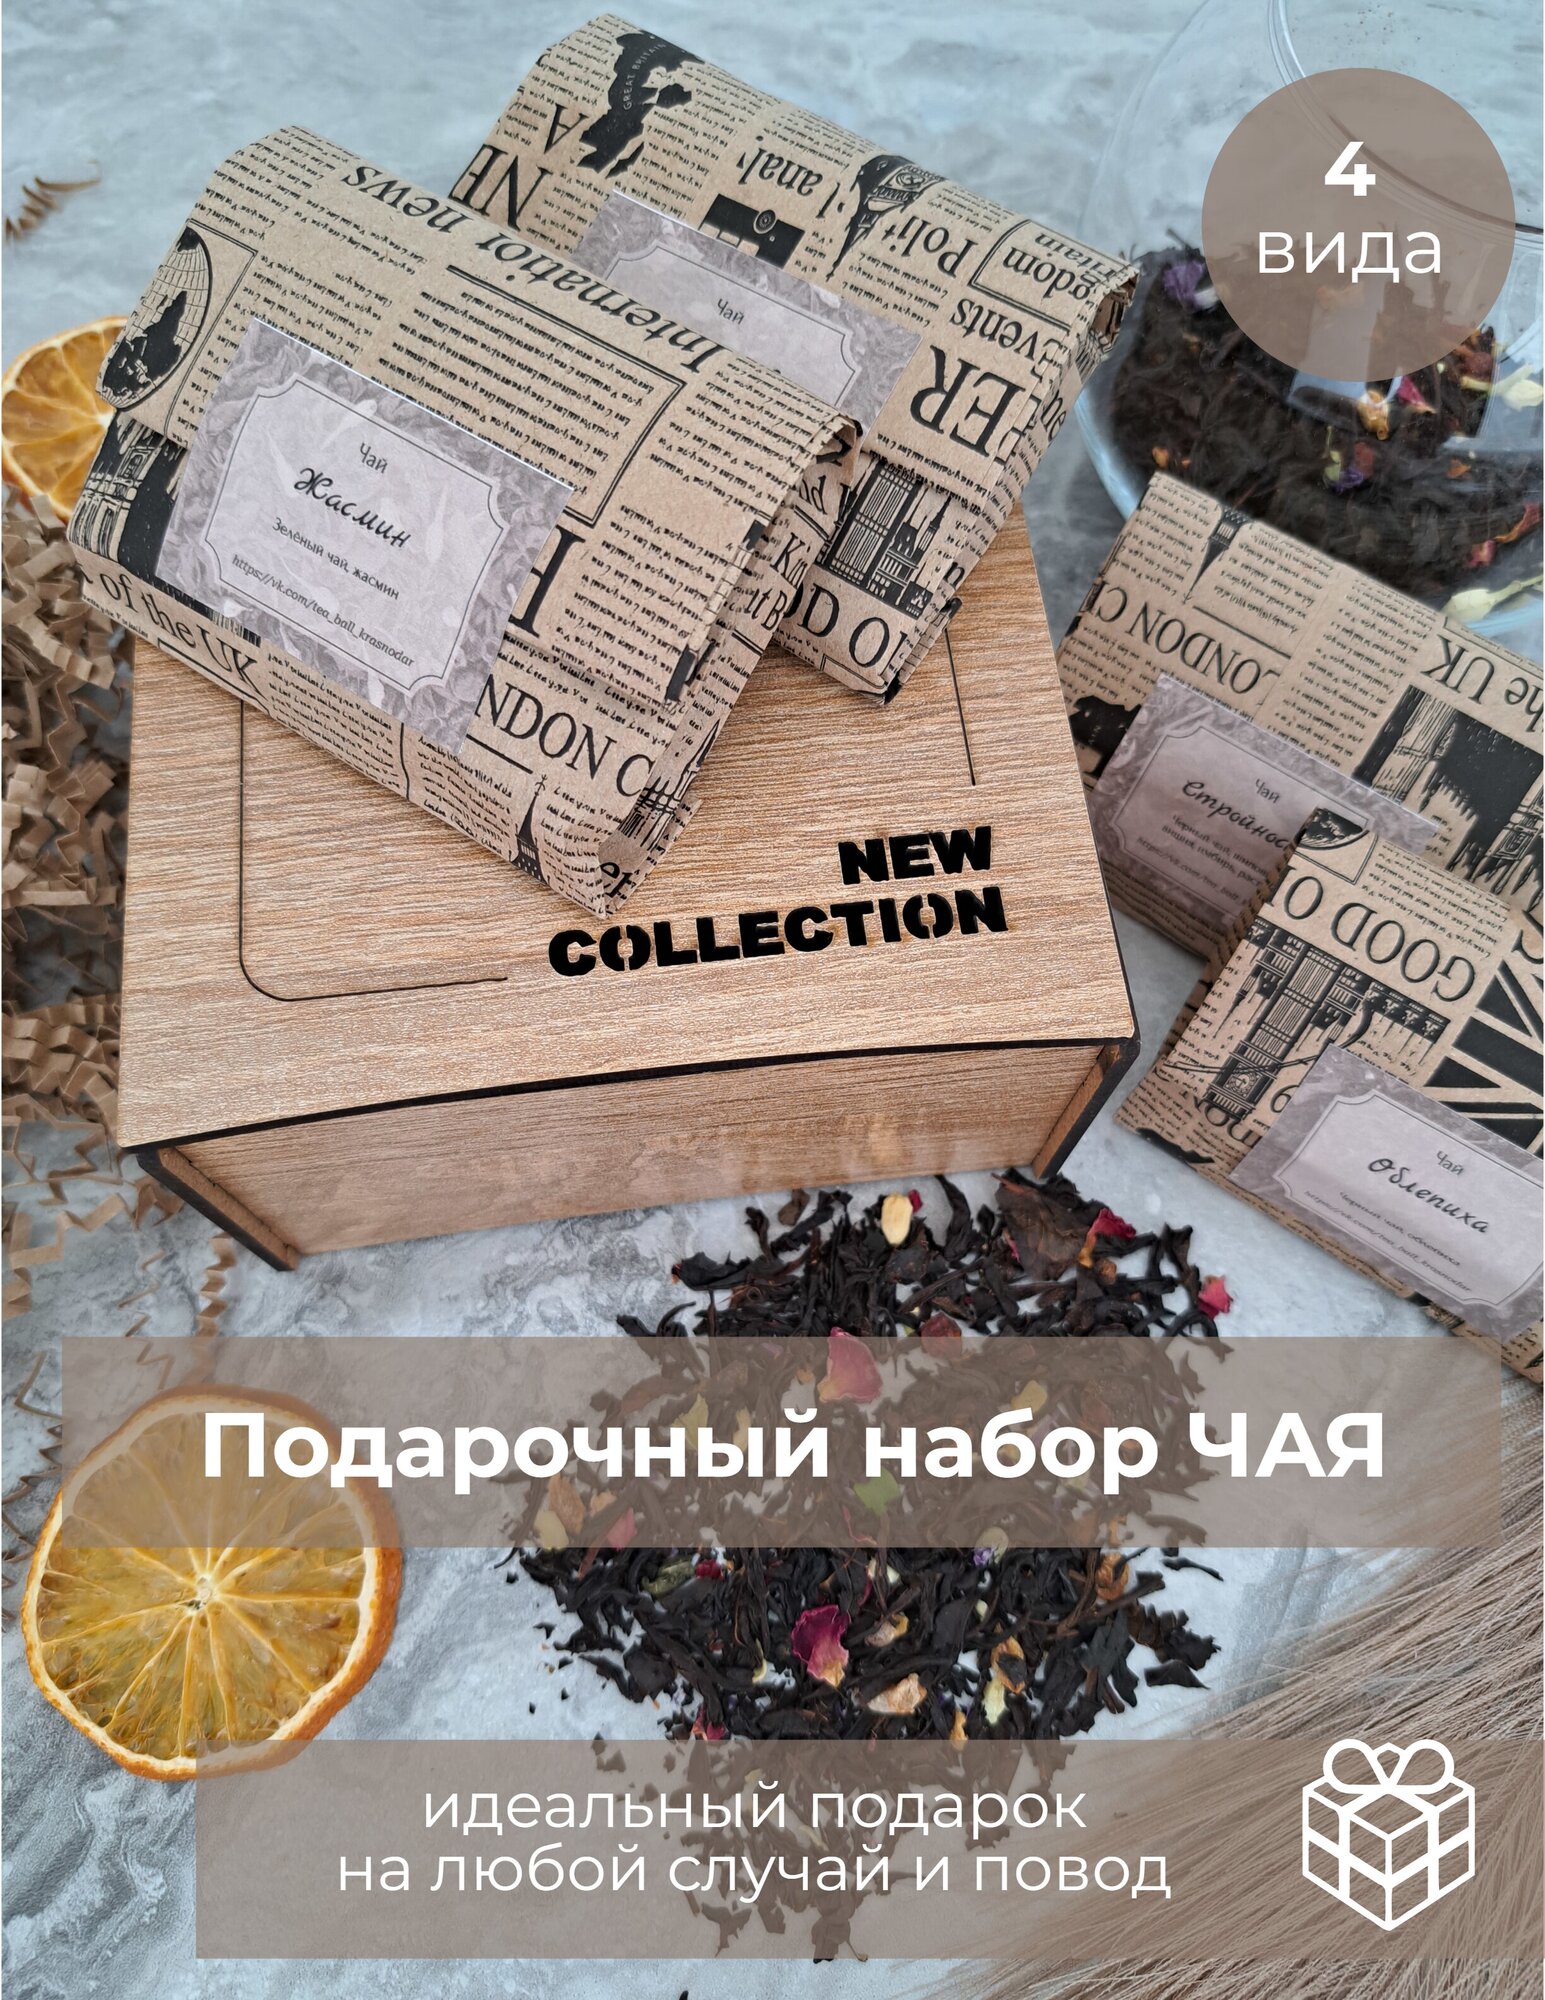 Чай, подарочный набор, 4 вида ресторанного чая по 20 гр. "New Collection" в деревянной коробке - фотография № 1